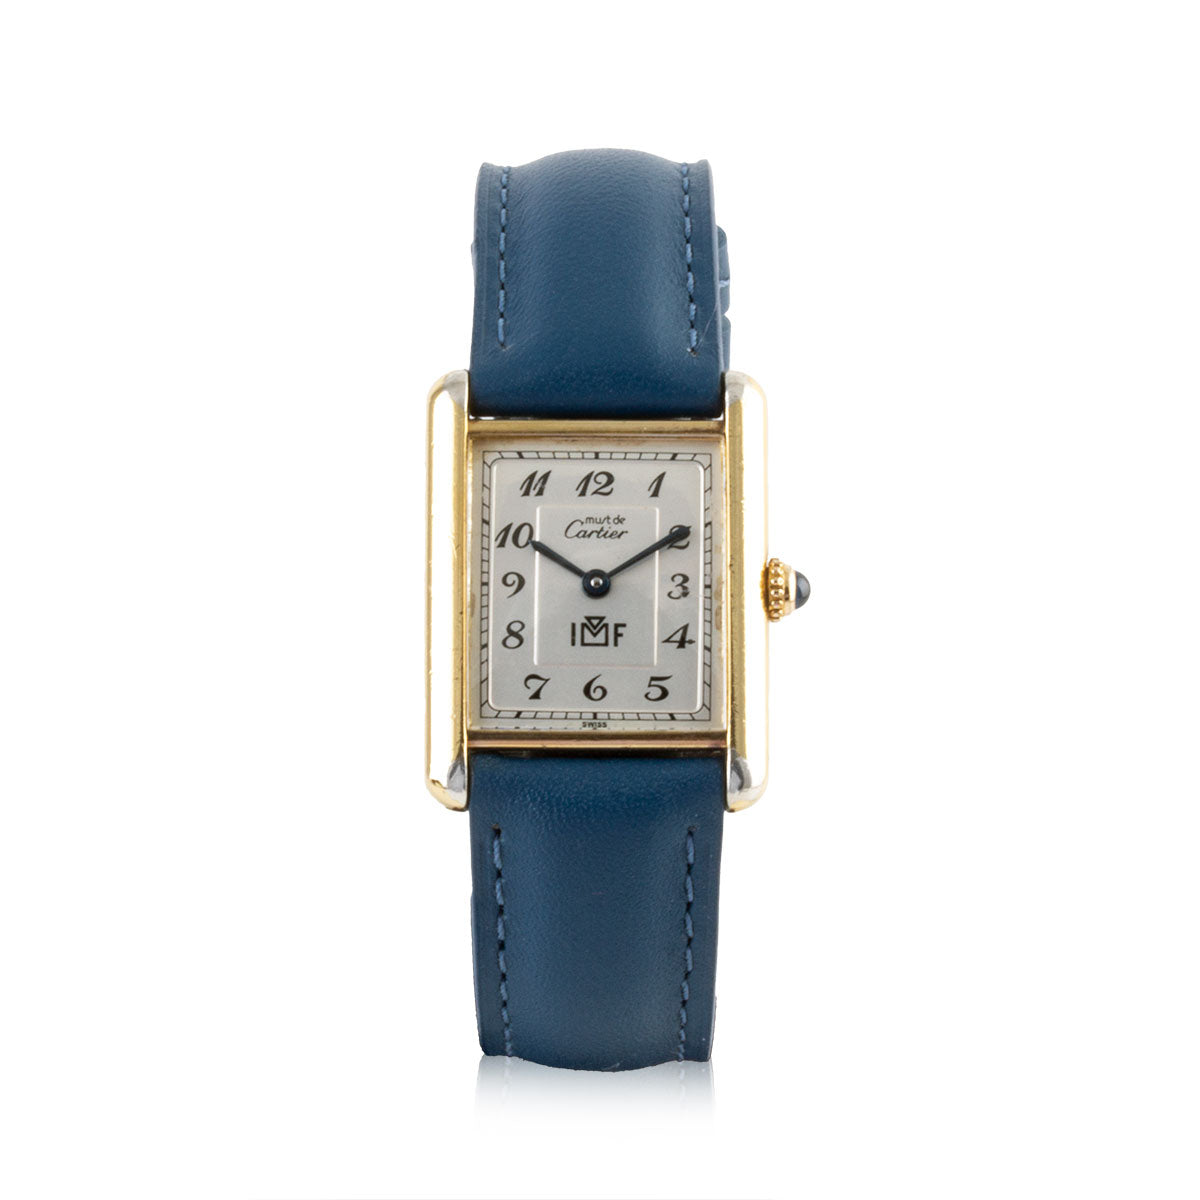 Second-hand watch - Cartier - Tank Must - 2200€